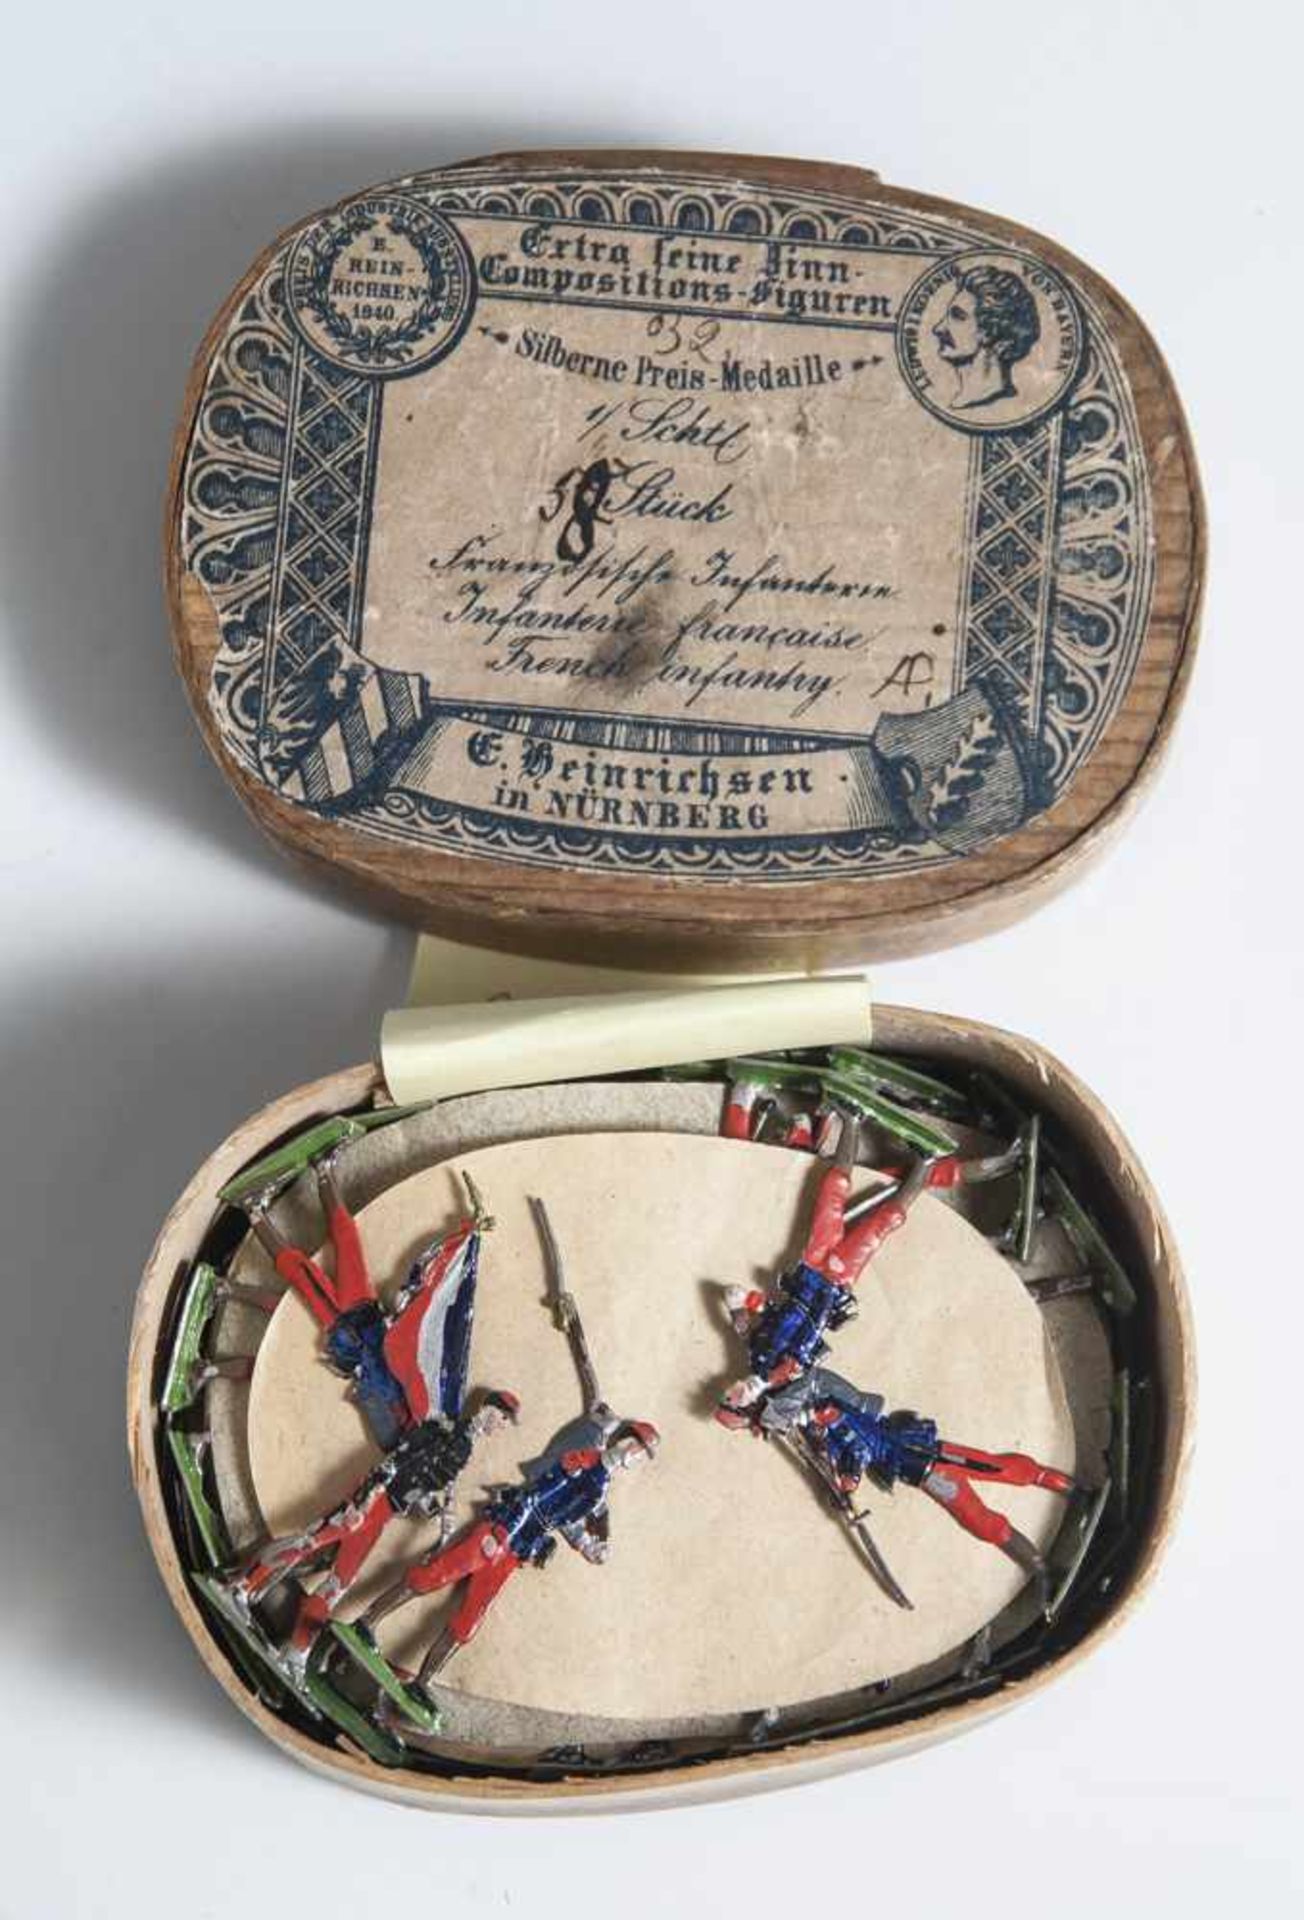 56 Zinnfiguren, "Franz. Infanterie", Ernst Heinrichsen, Nürnberg, Goldene Preis Medaille. In org.